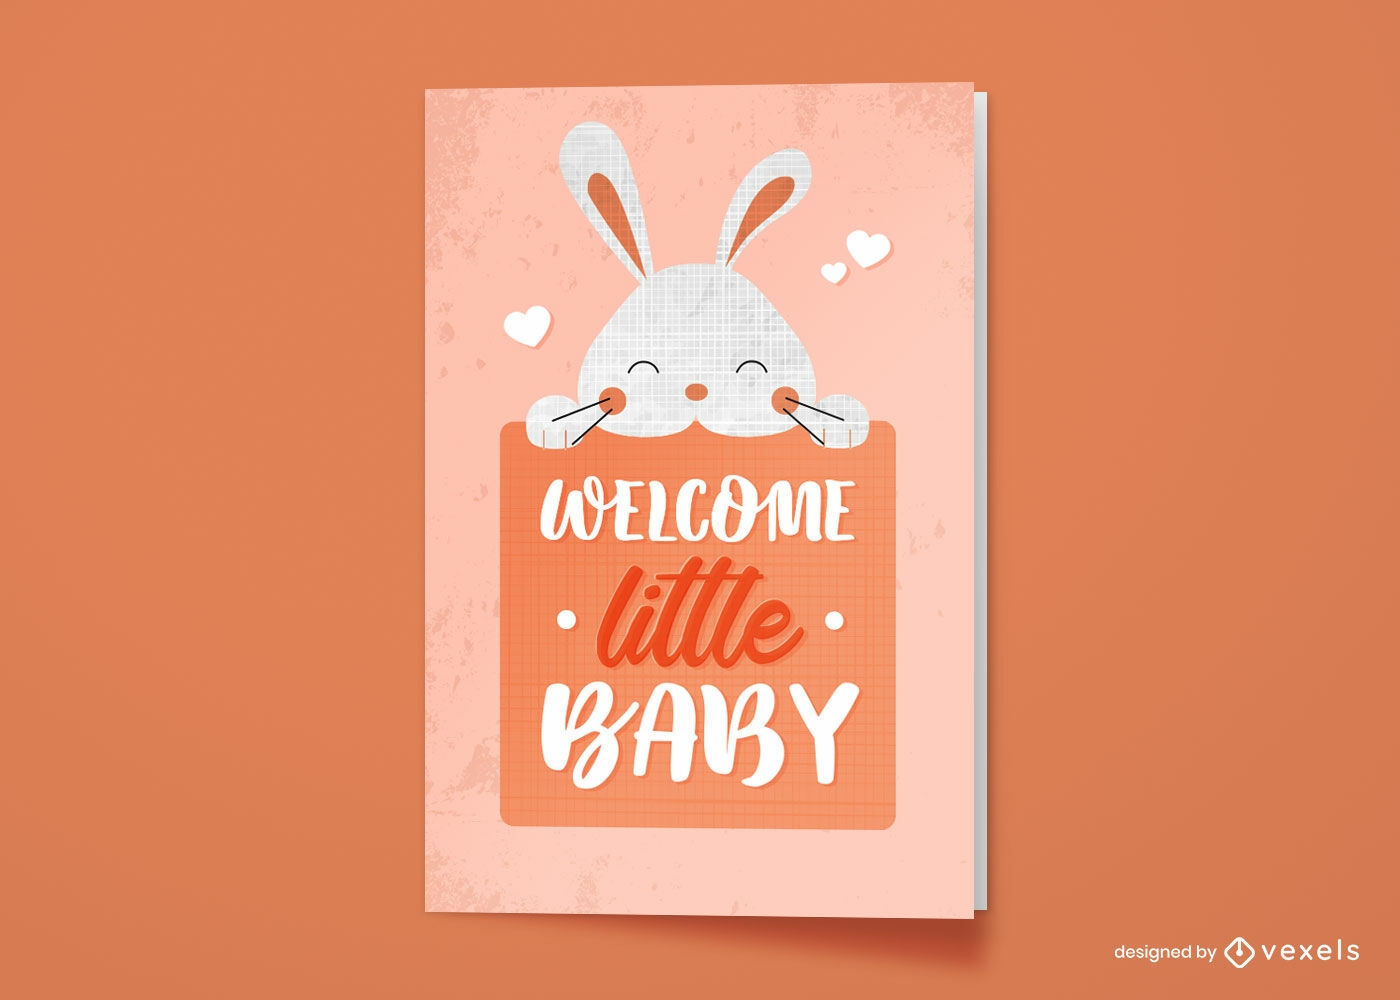 Dise?o lindo de la tarjeta de felicitaci?n del nuevo beb? del conejo